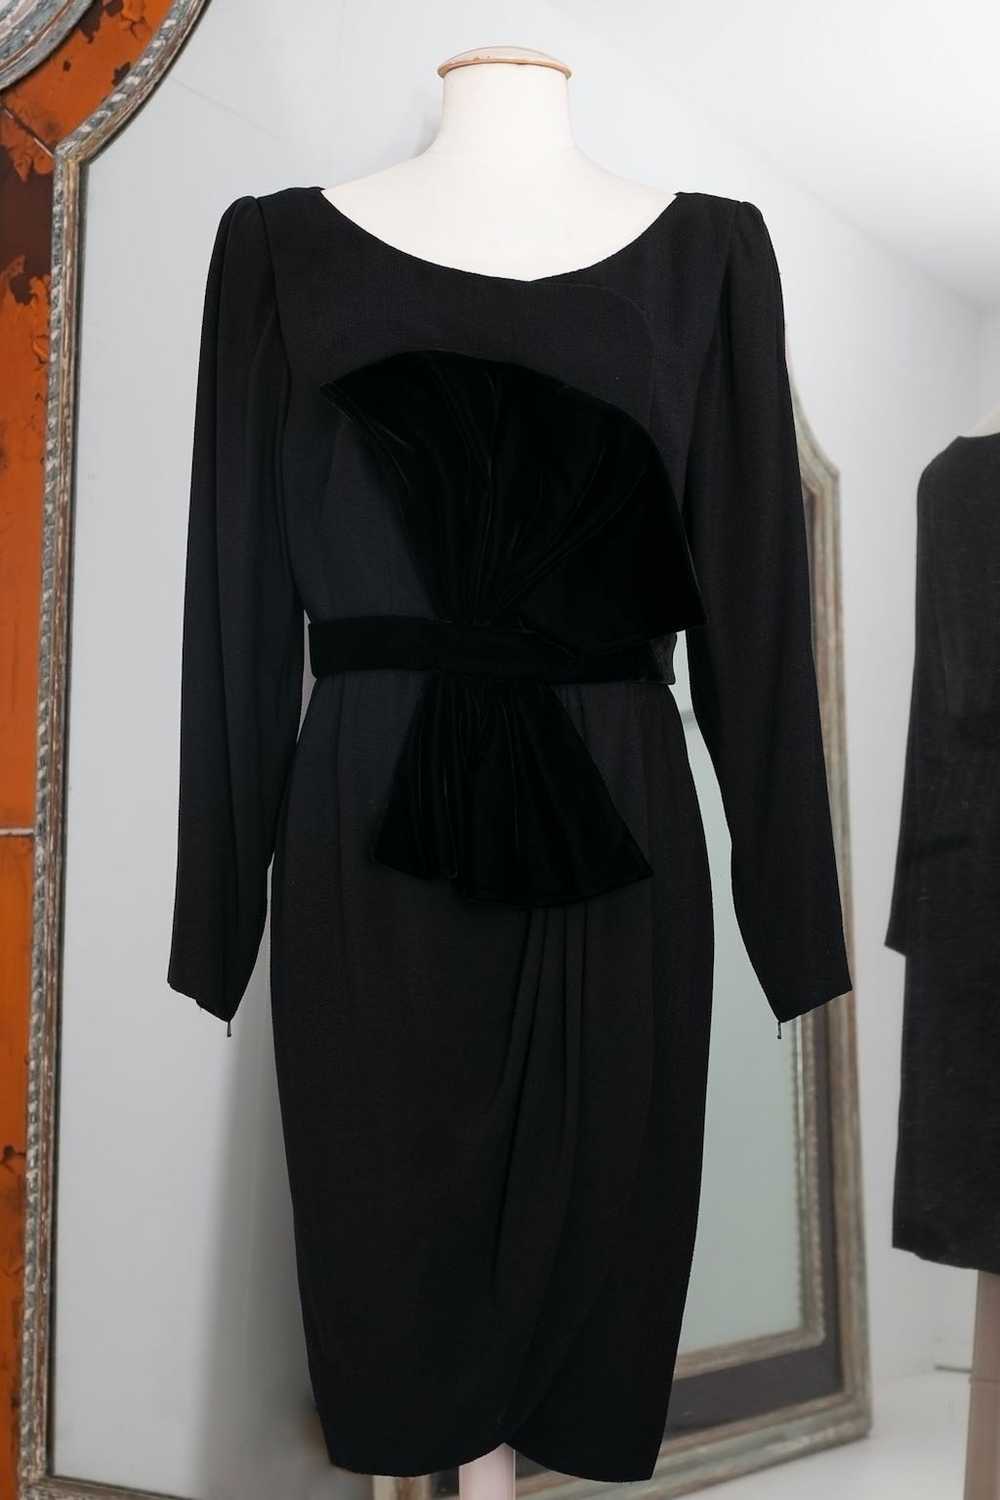 Yves saint Laurent Haute Couture black dress - image 1